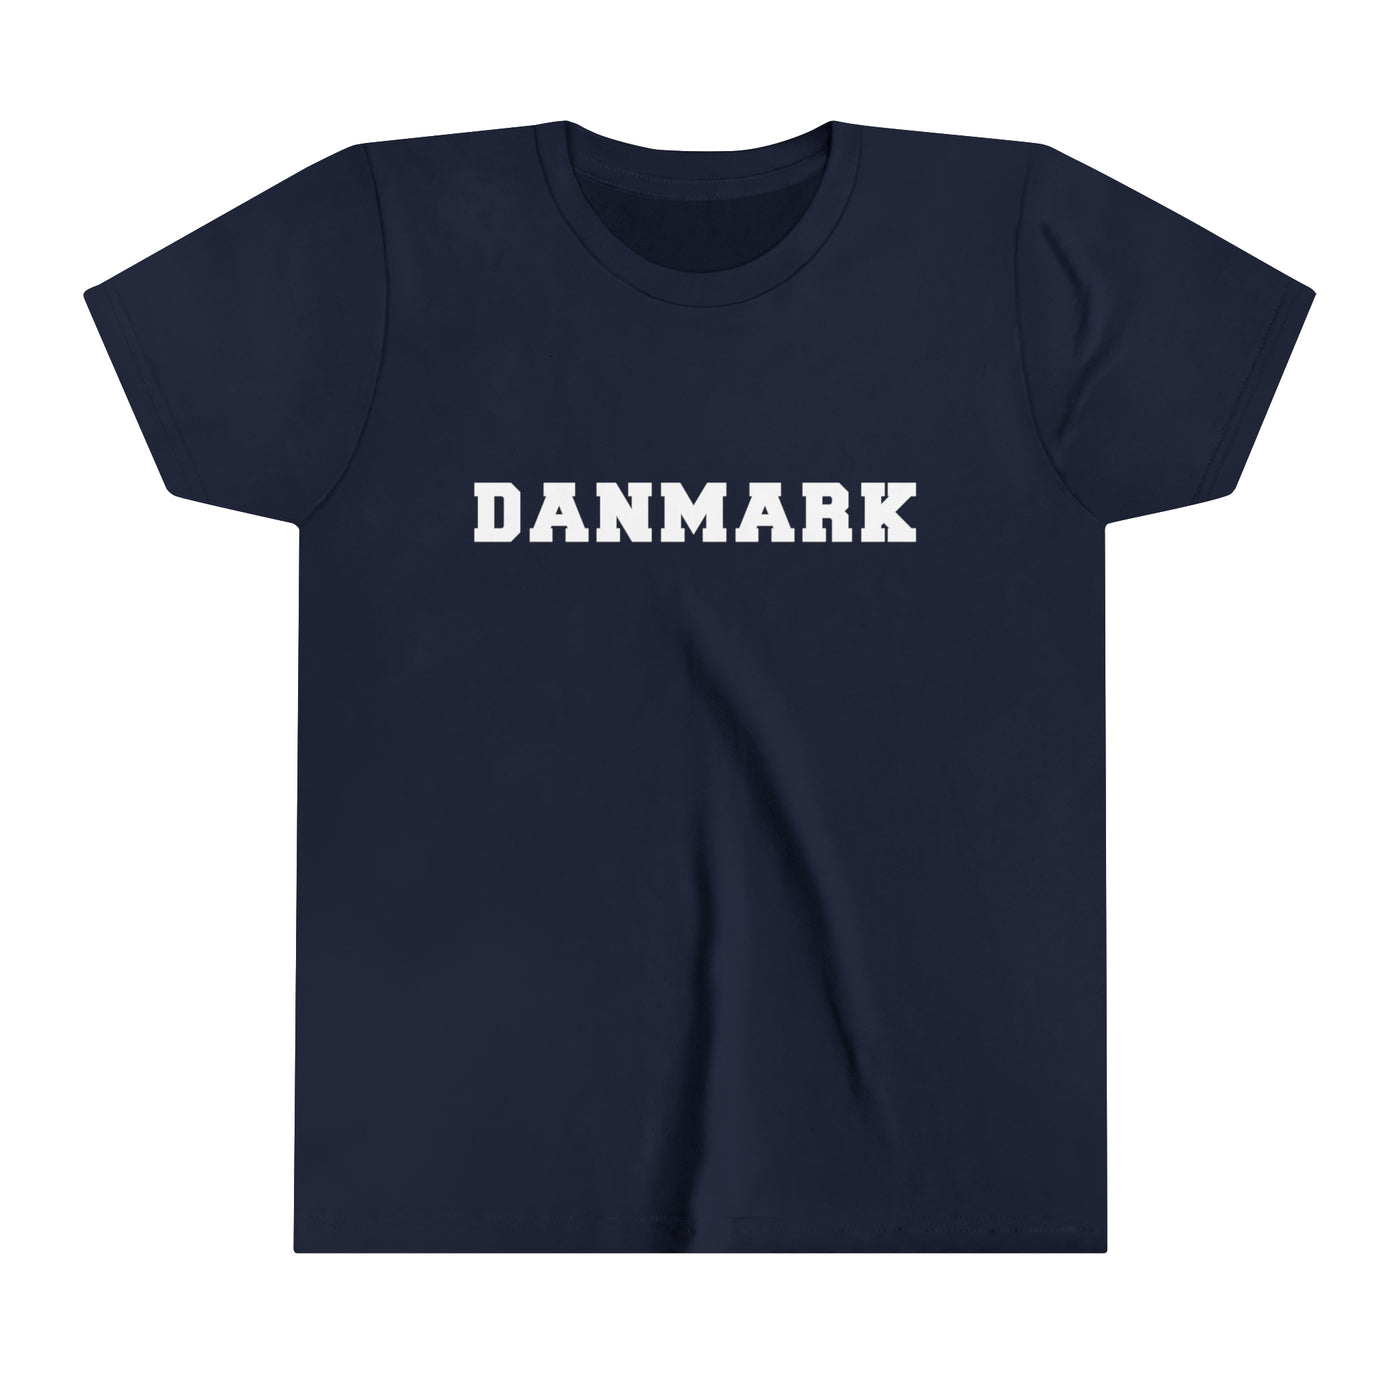 Danmark Kids T-Shirt